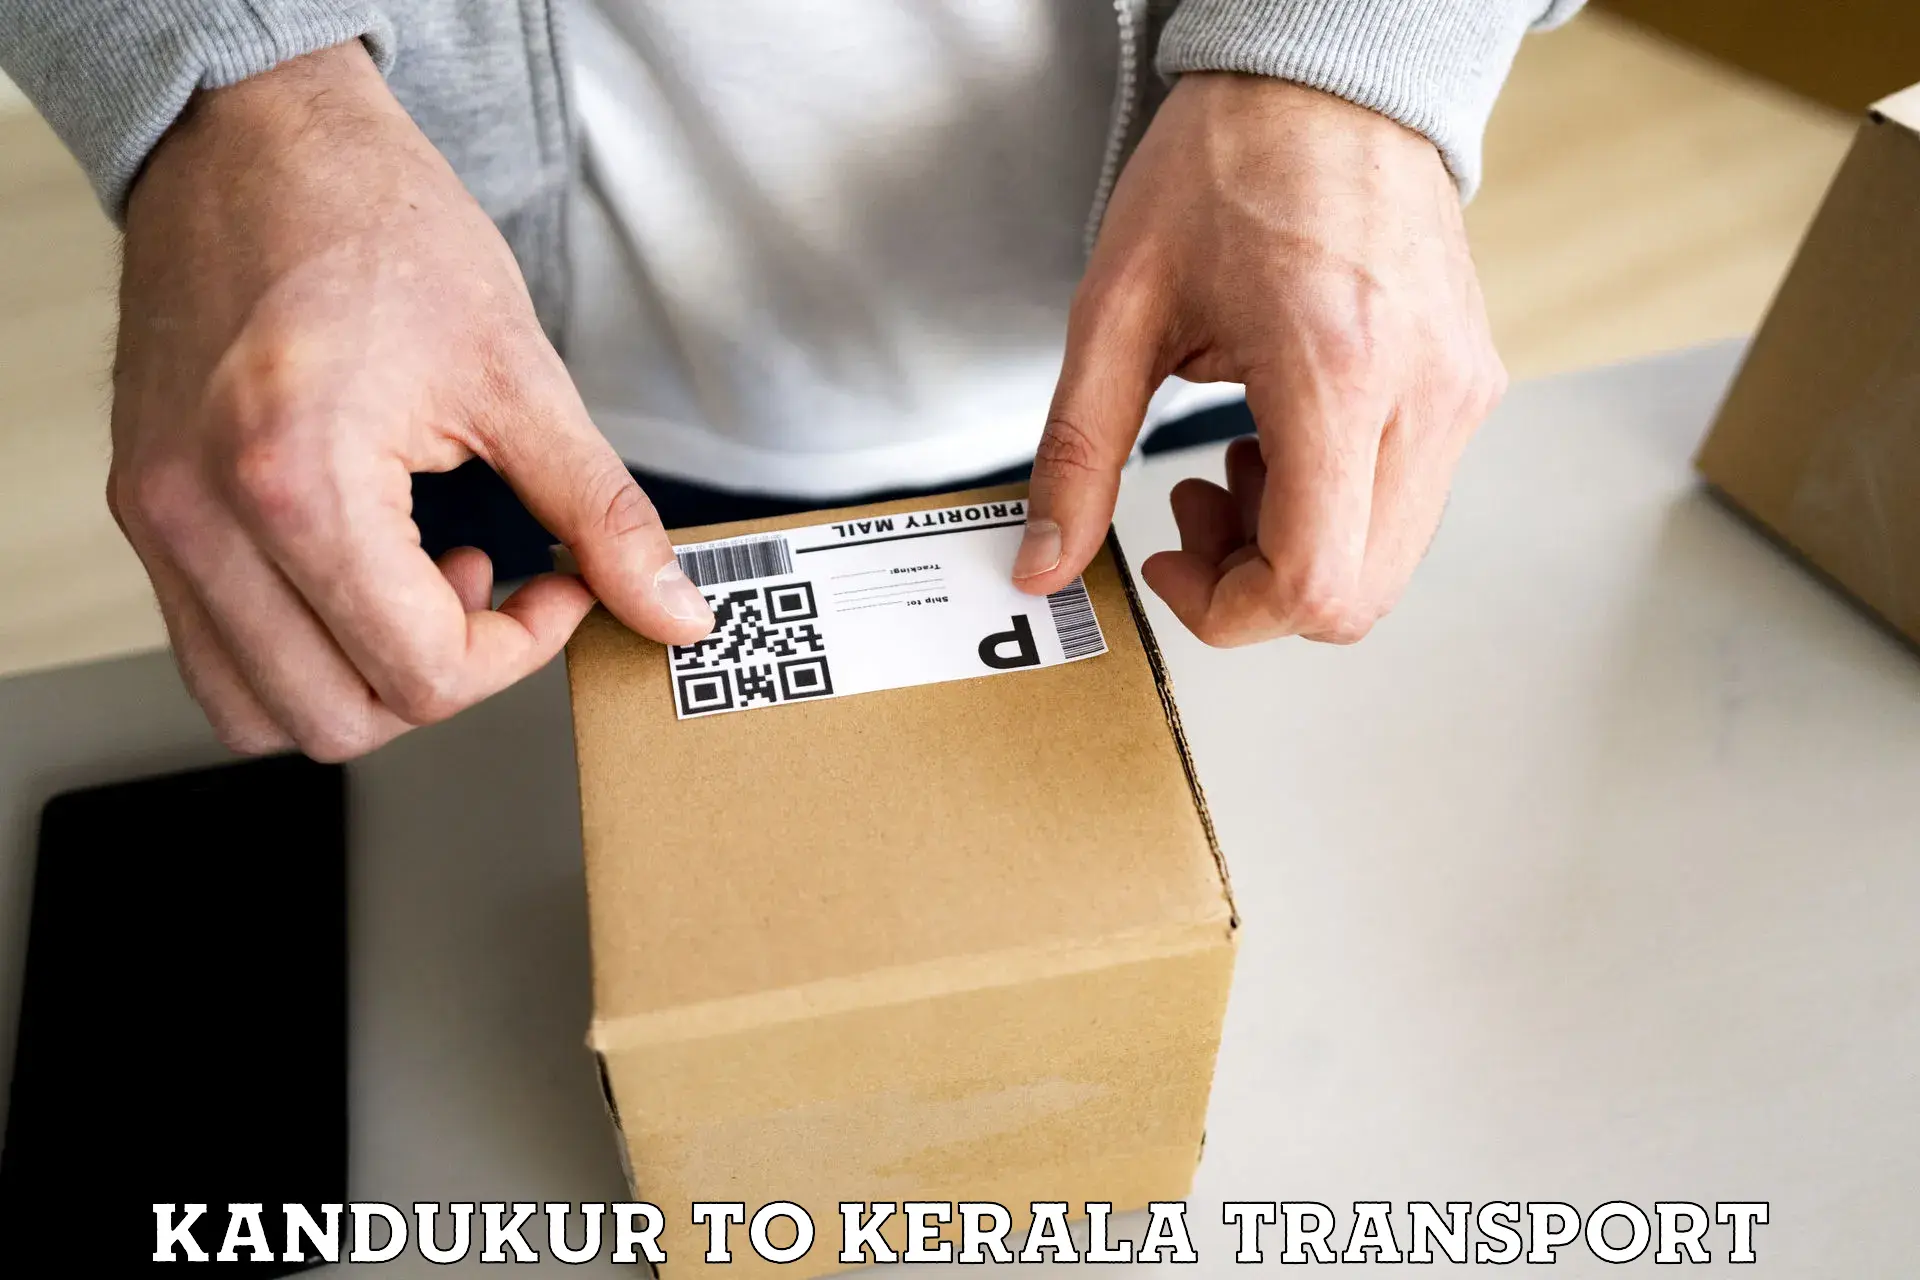 Interstate transport services Kandukur to Kerala